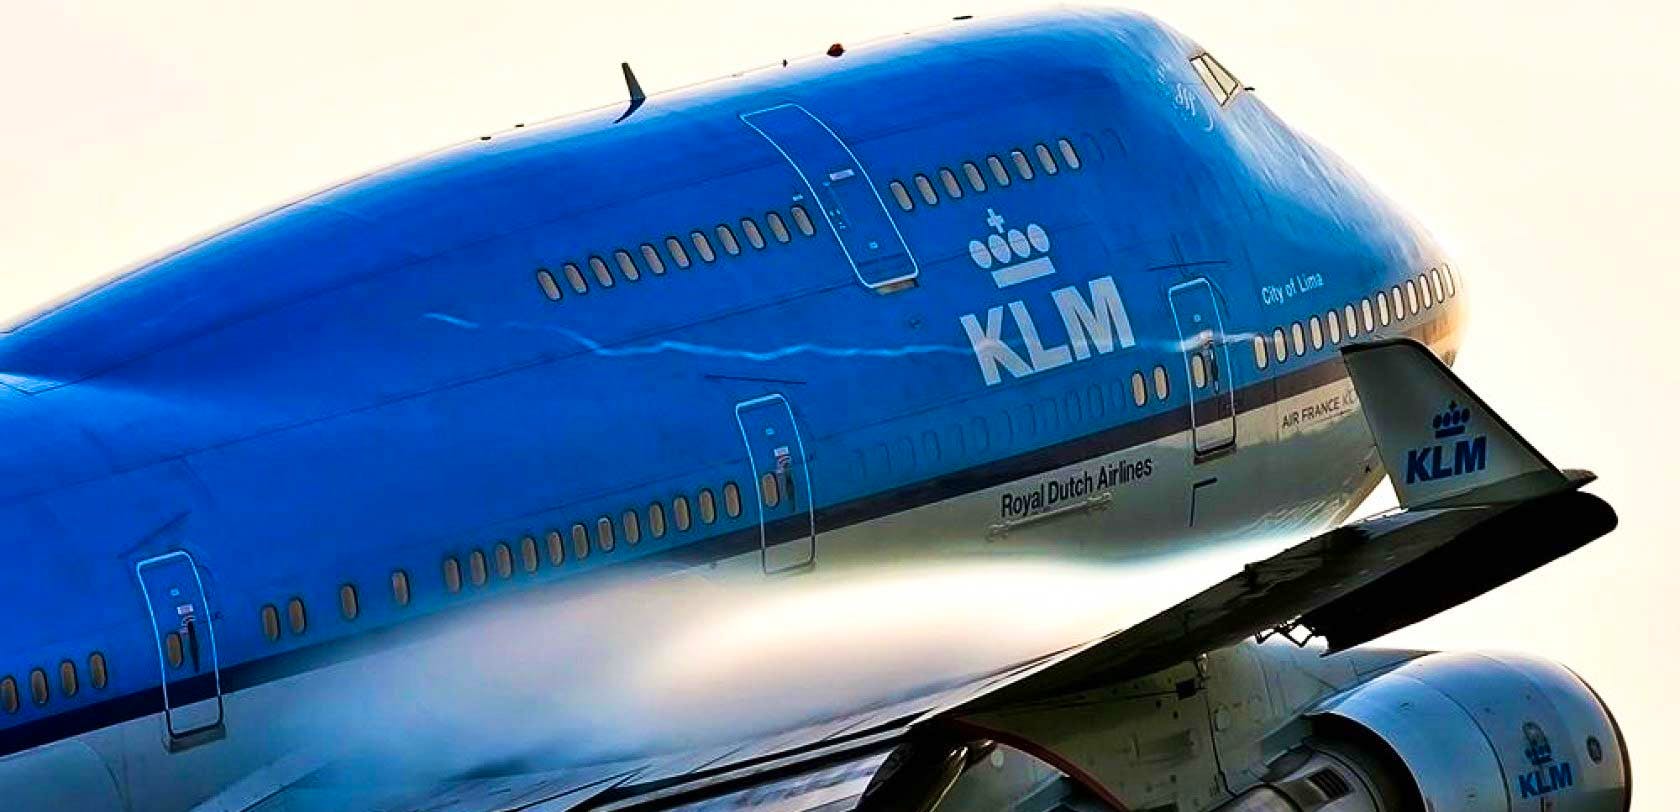 Aviationtag B747 KLM Ein echtes Stück Flugzeug